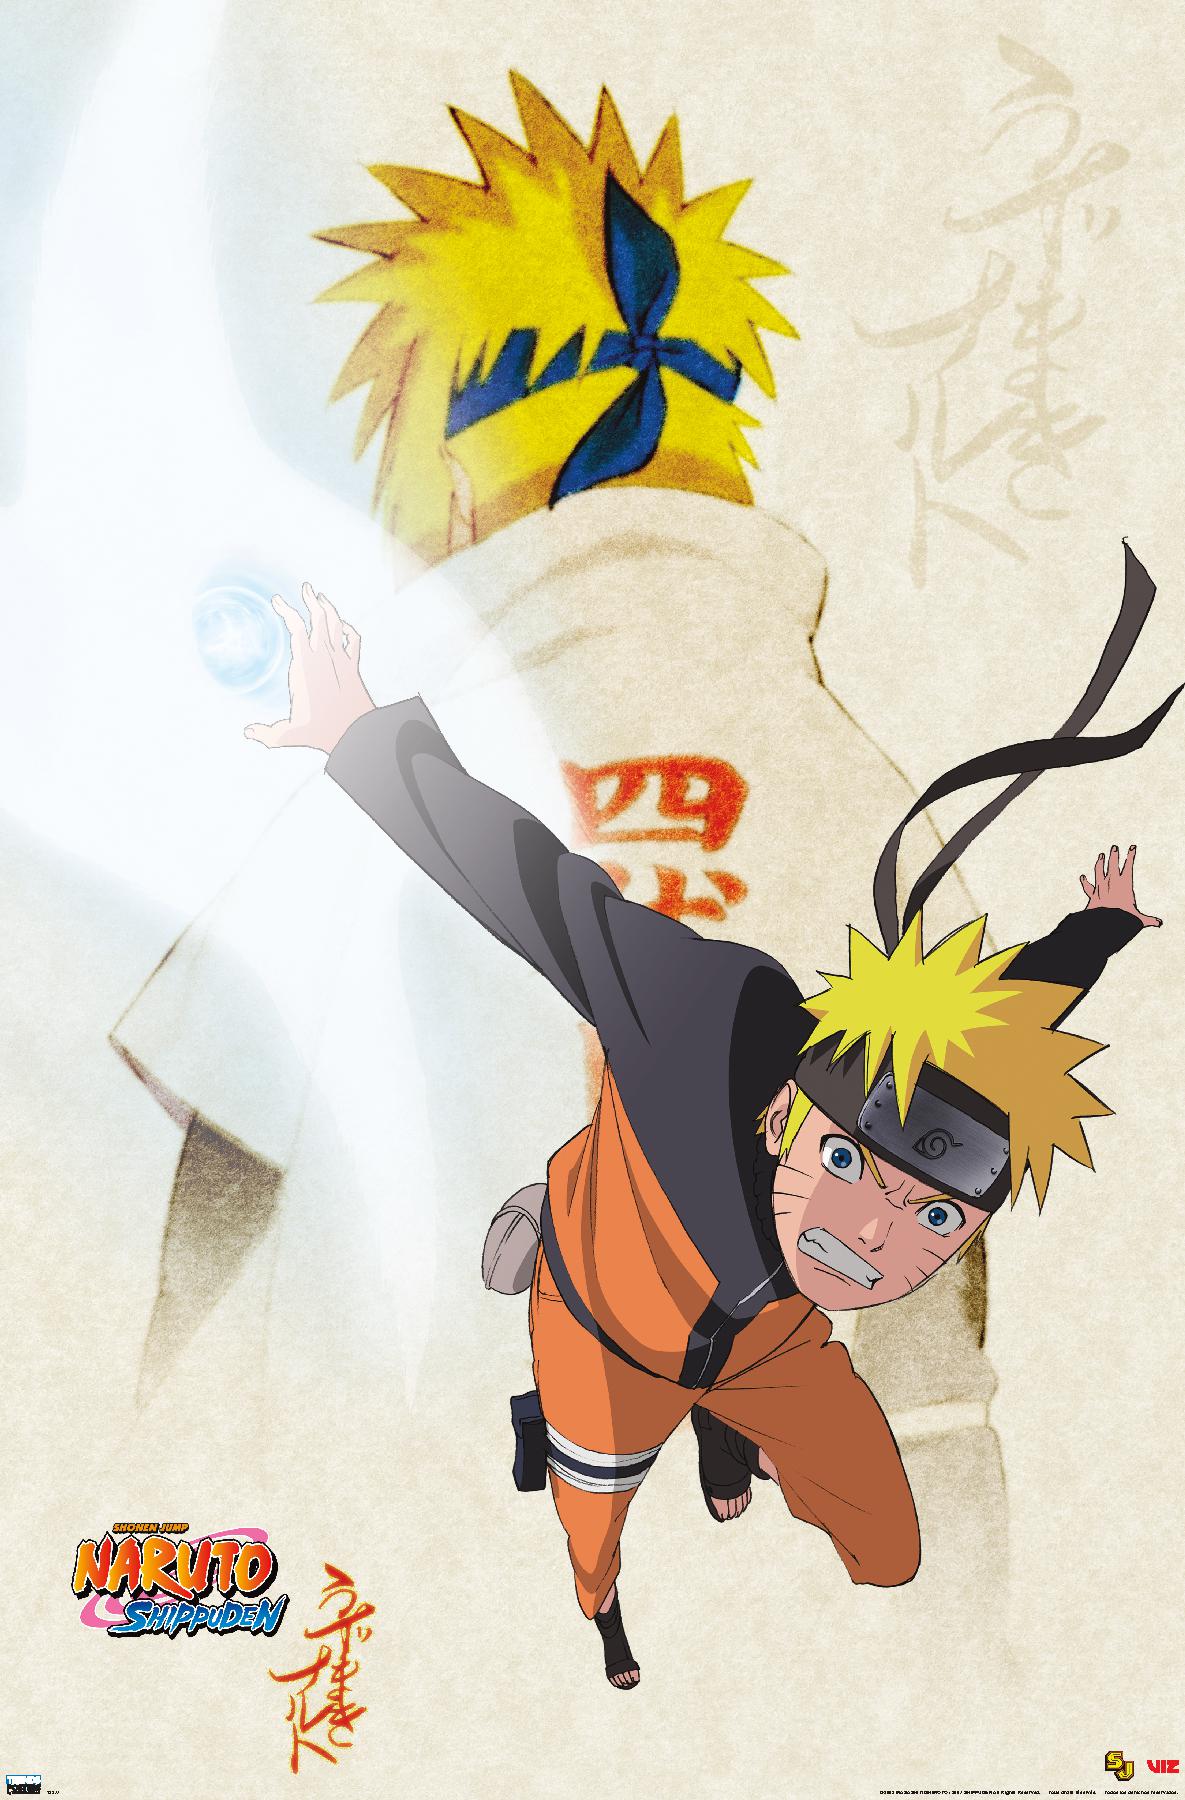 Naruto Wall Poster, 22.375 x 34